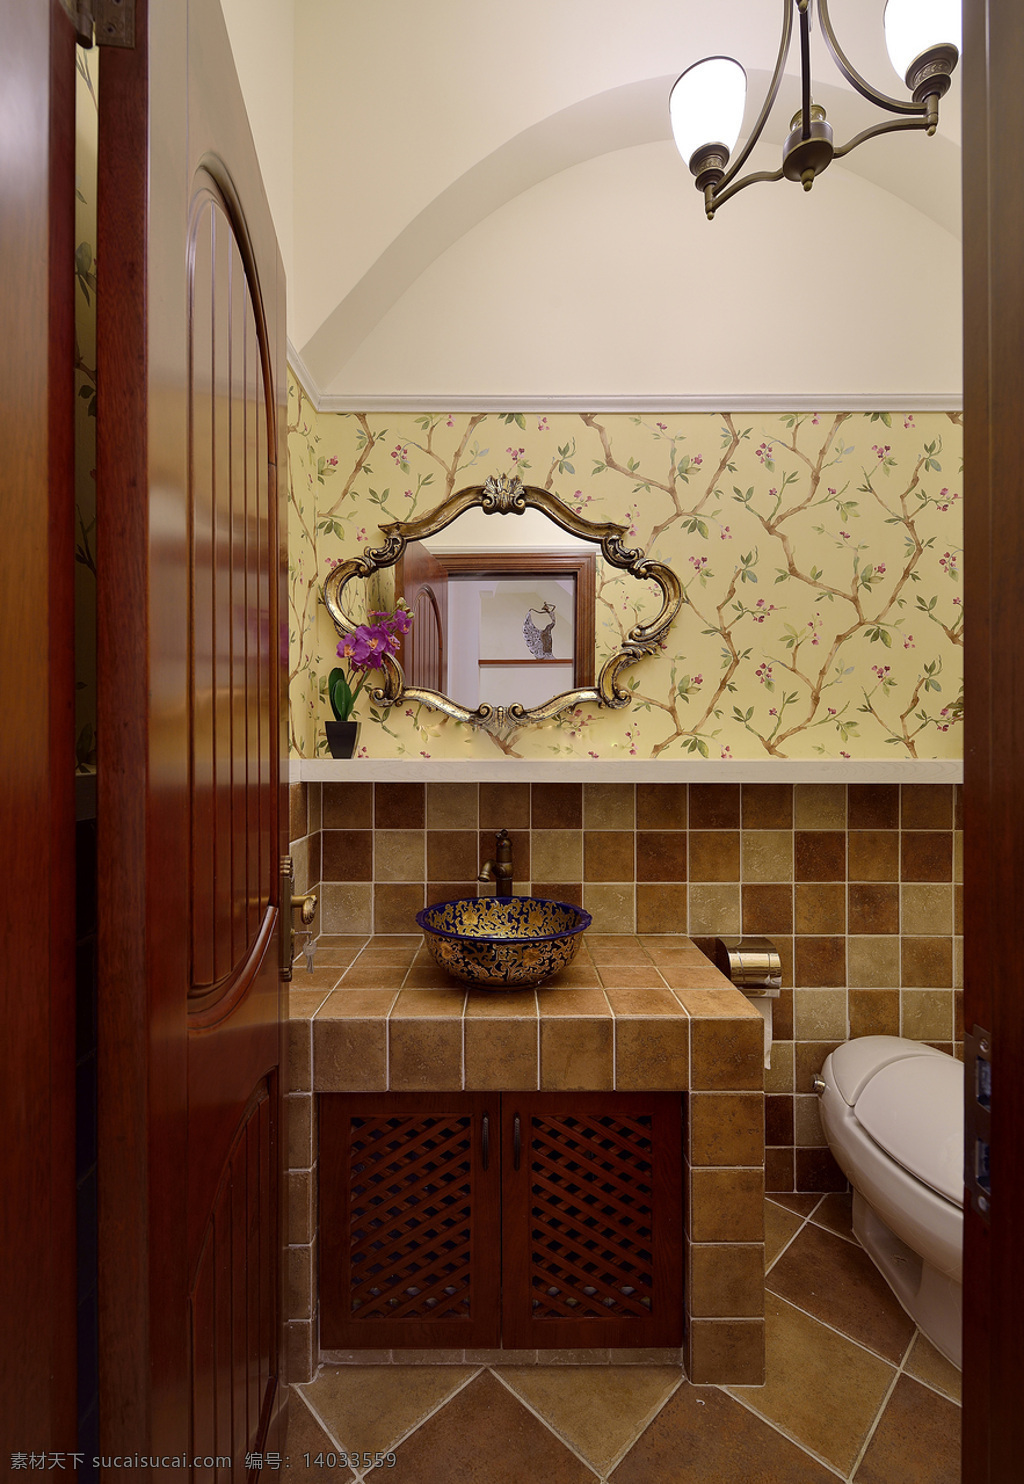 田园 卫生间 小 碎花 背景 墙 室内装修 效果图 浴室装修 小碎花背景墙 浅褐色洗手台 格子地板